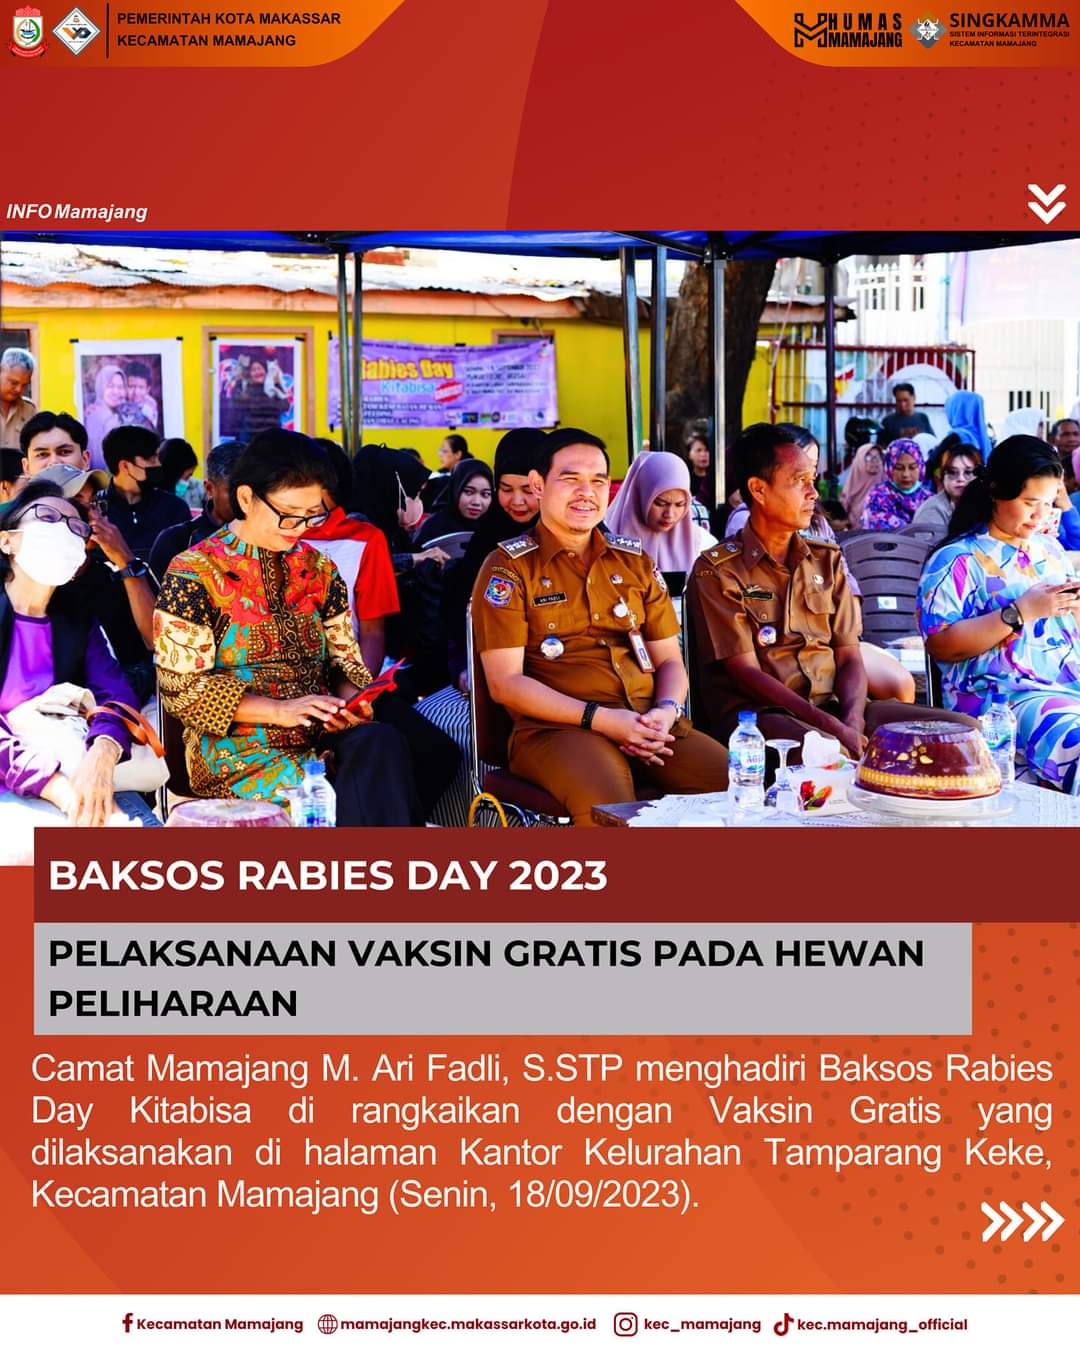 Gambar Camat Mamajang M. Ari Fadli S.STP Menghadiri Baksos Rabies Day Dirangkaikan Vaksin Gratis